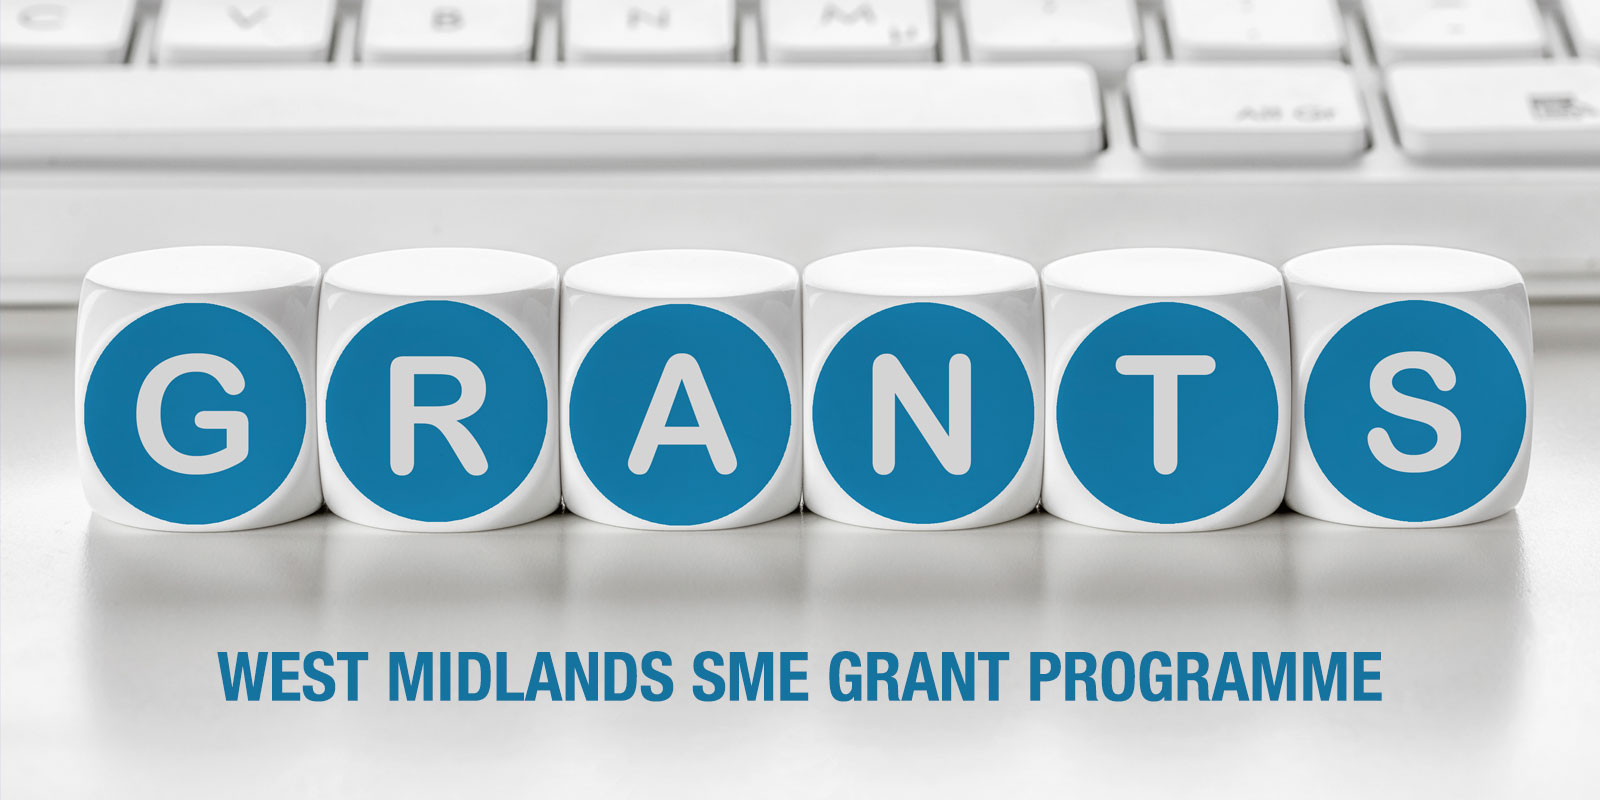 West Midlands SME Grant Programme